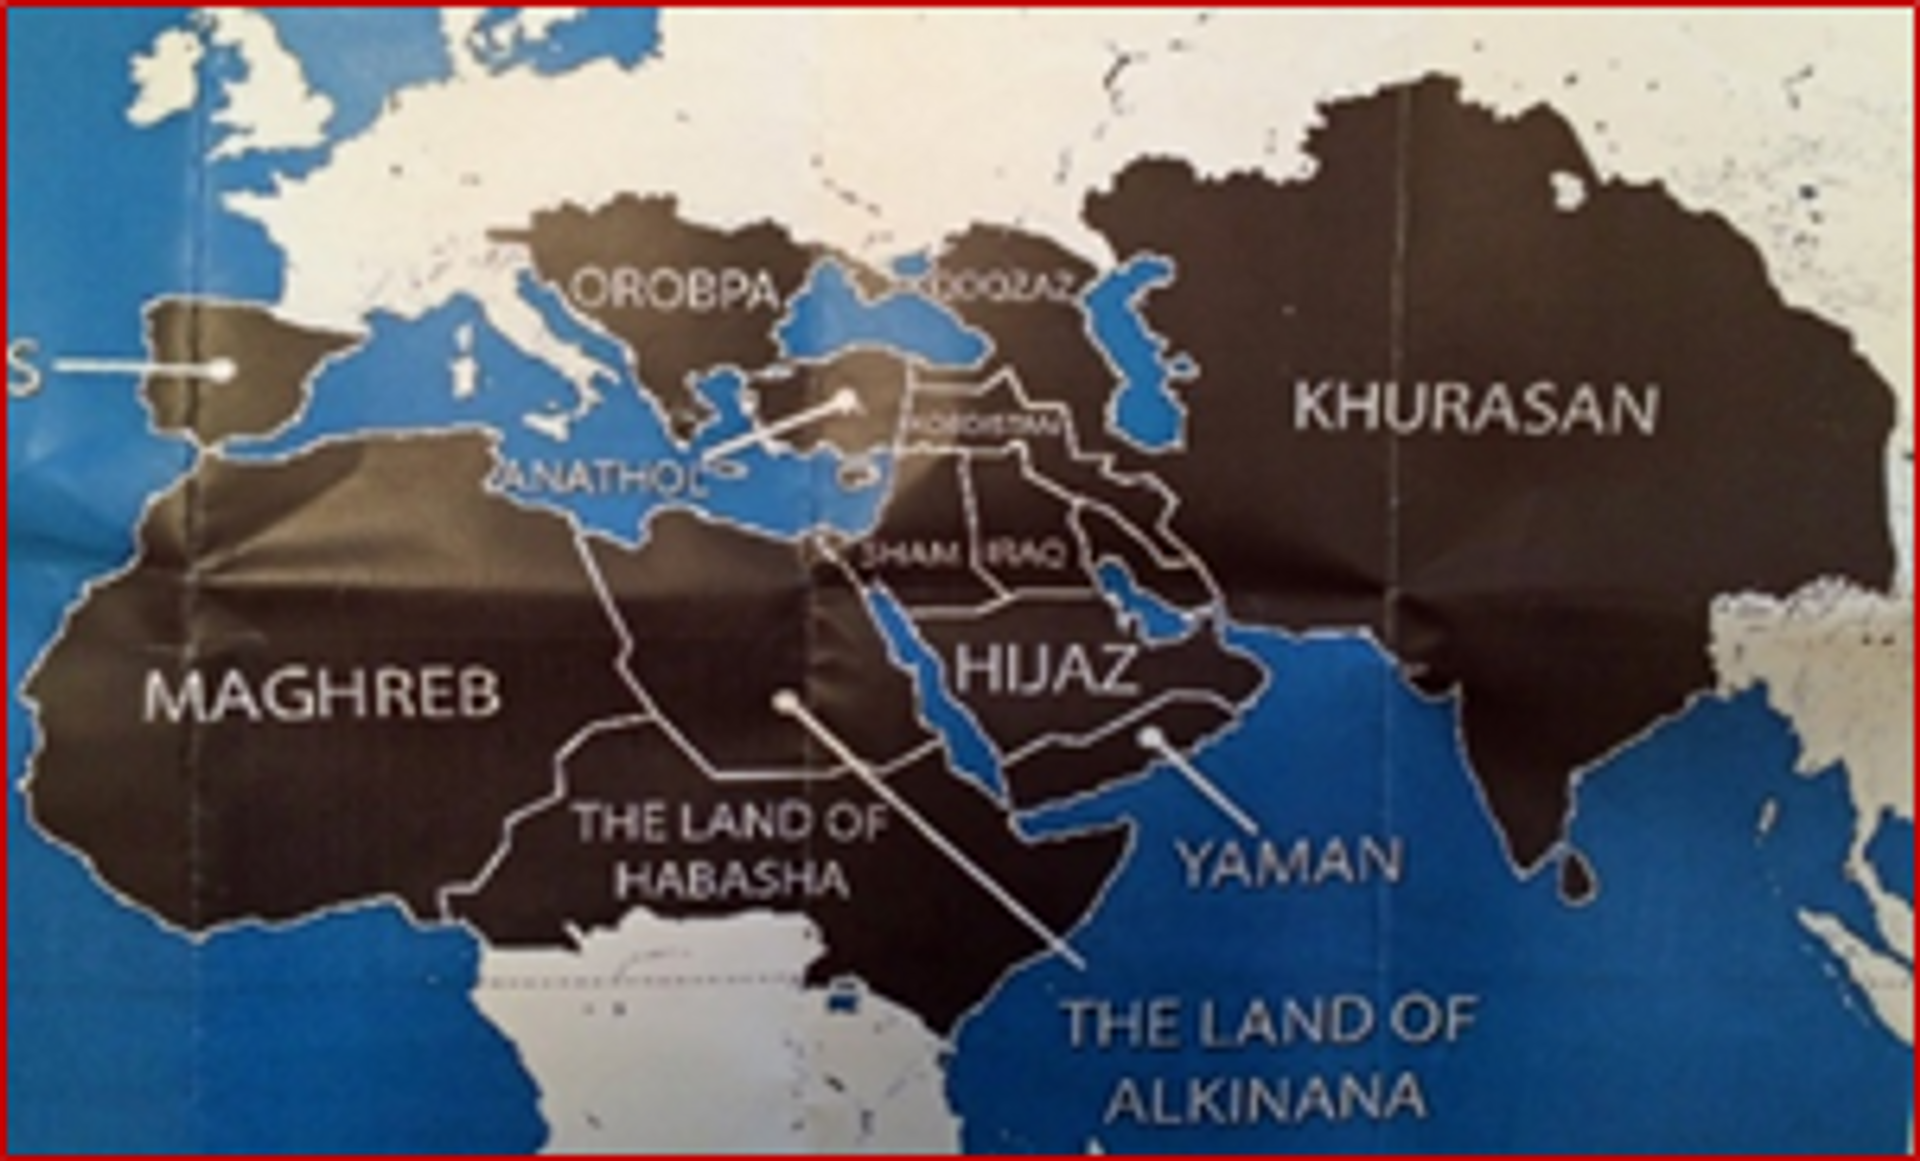 Global caliphate